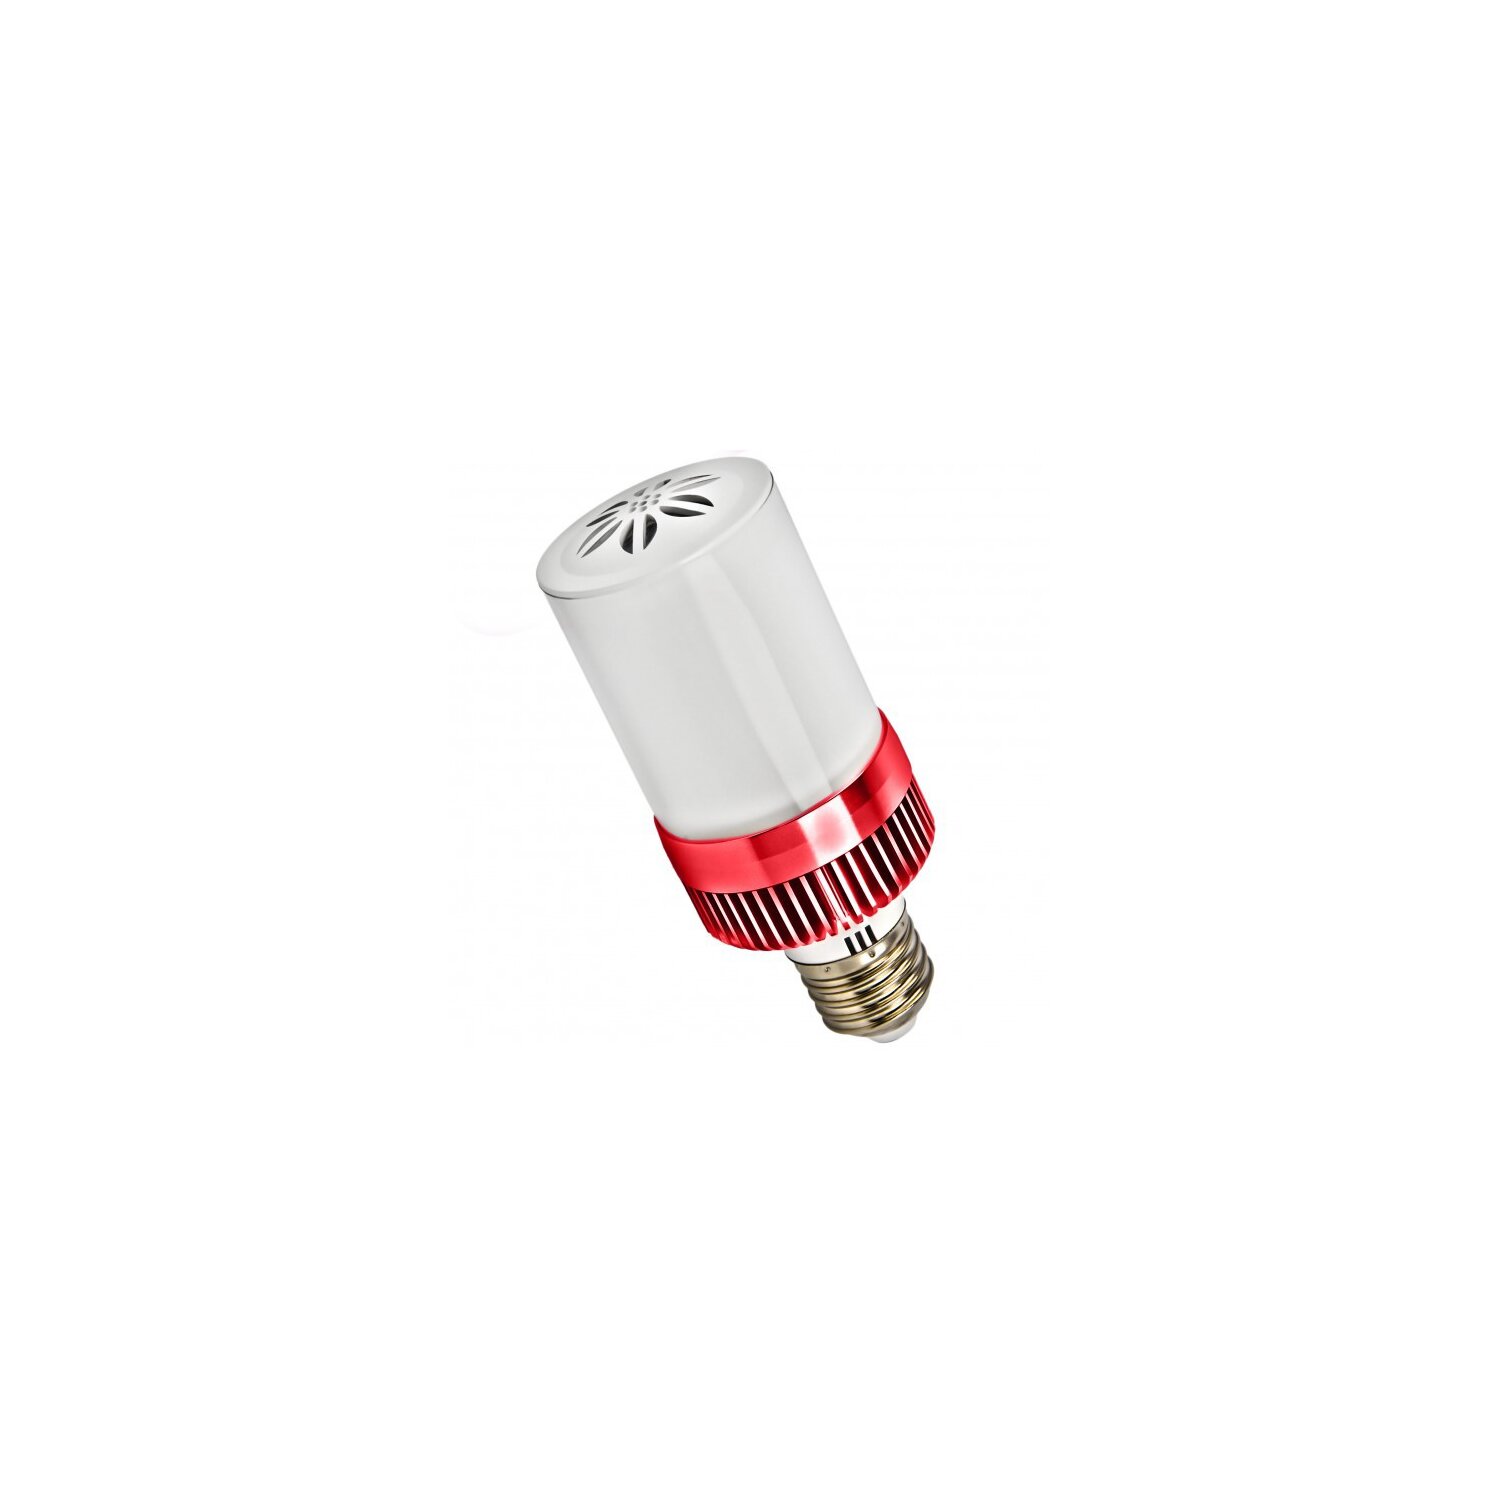 Minadax® LED Lampe mit Bluetooth Lautsprecher ca. 15m Reichweite in Rot  E27  4,5 Watt A++  LED Warmweiß Leuchtmittel, 400-460 Lumen